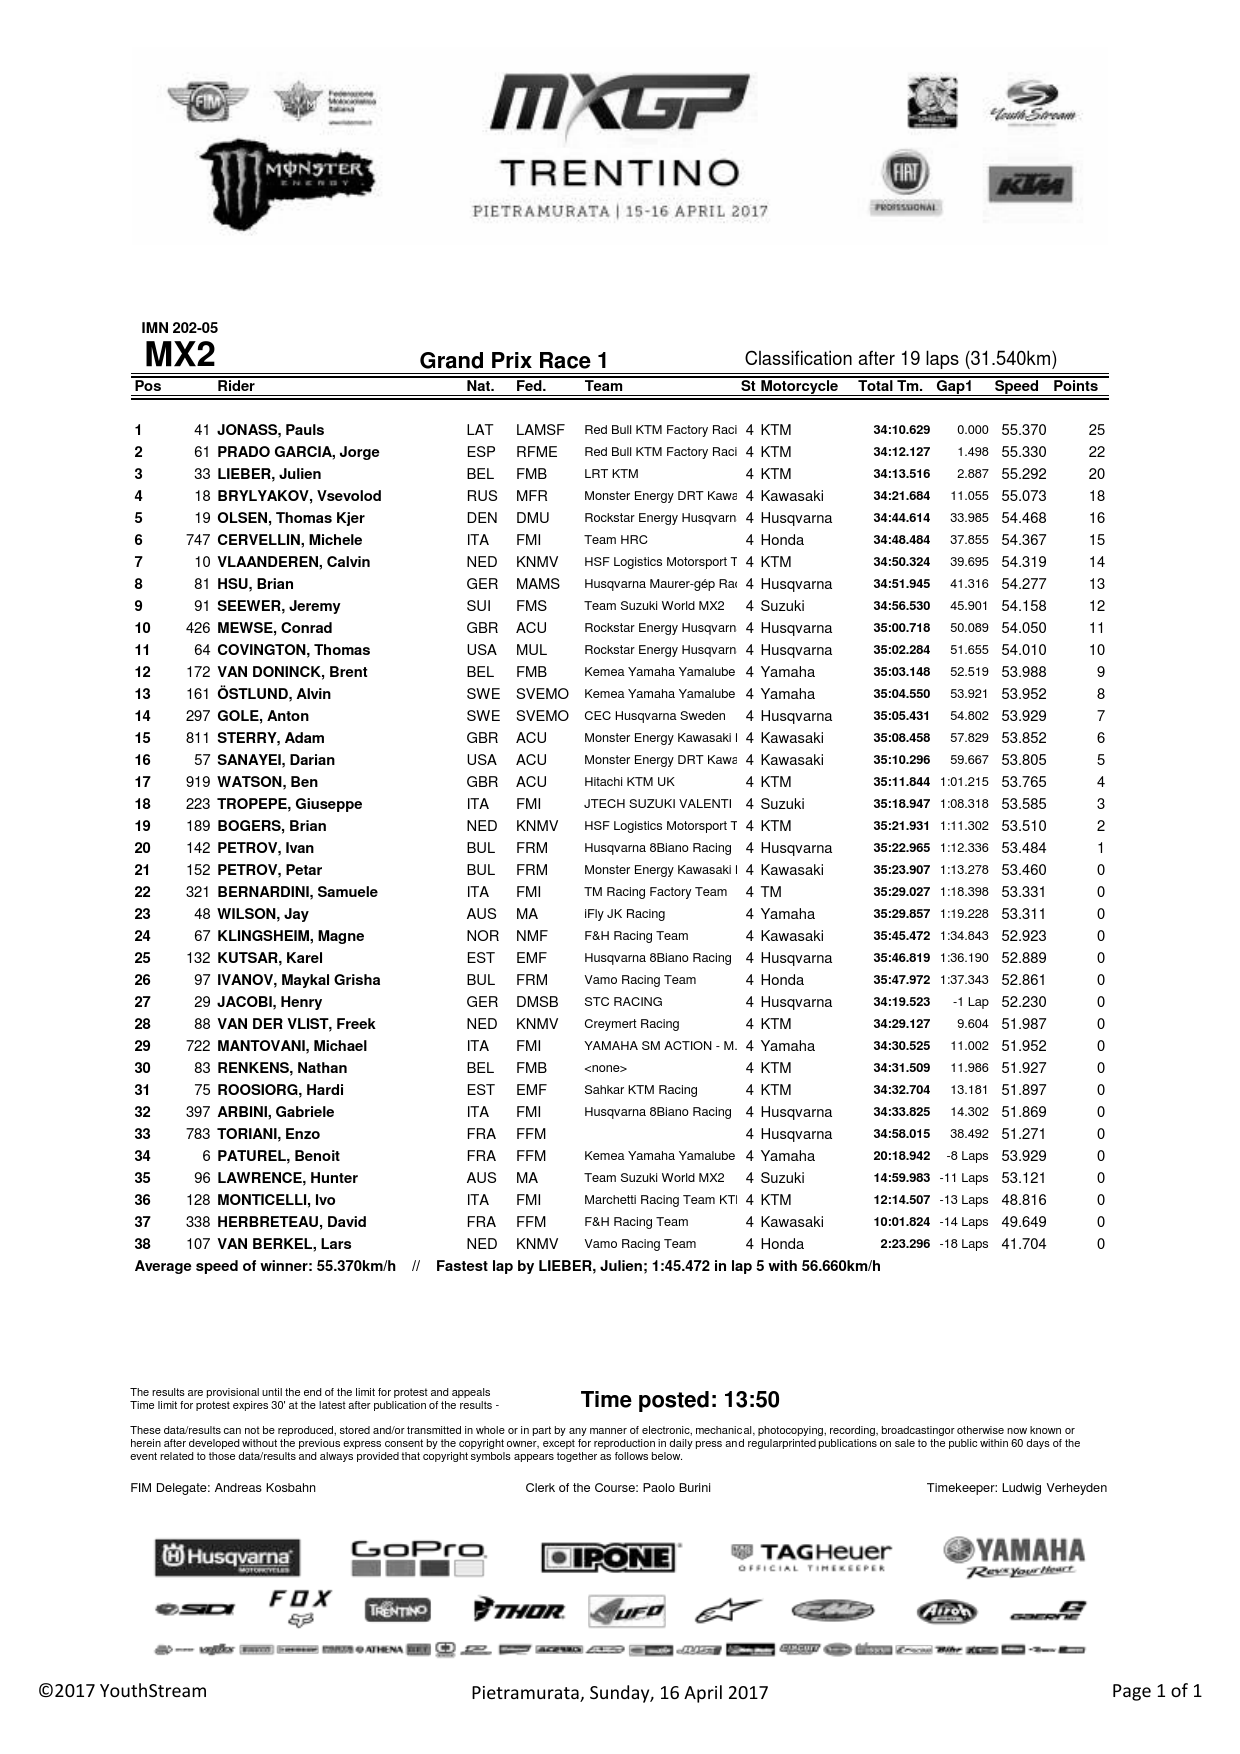 Результаты первого заезда Гран-При Трентино MX2